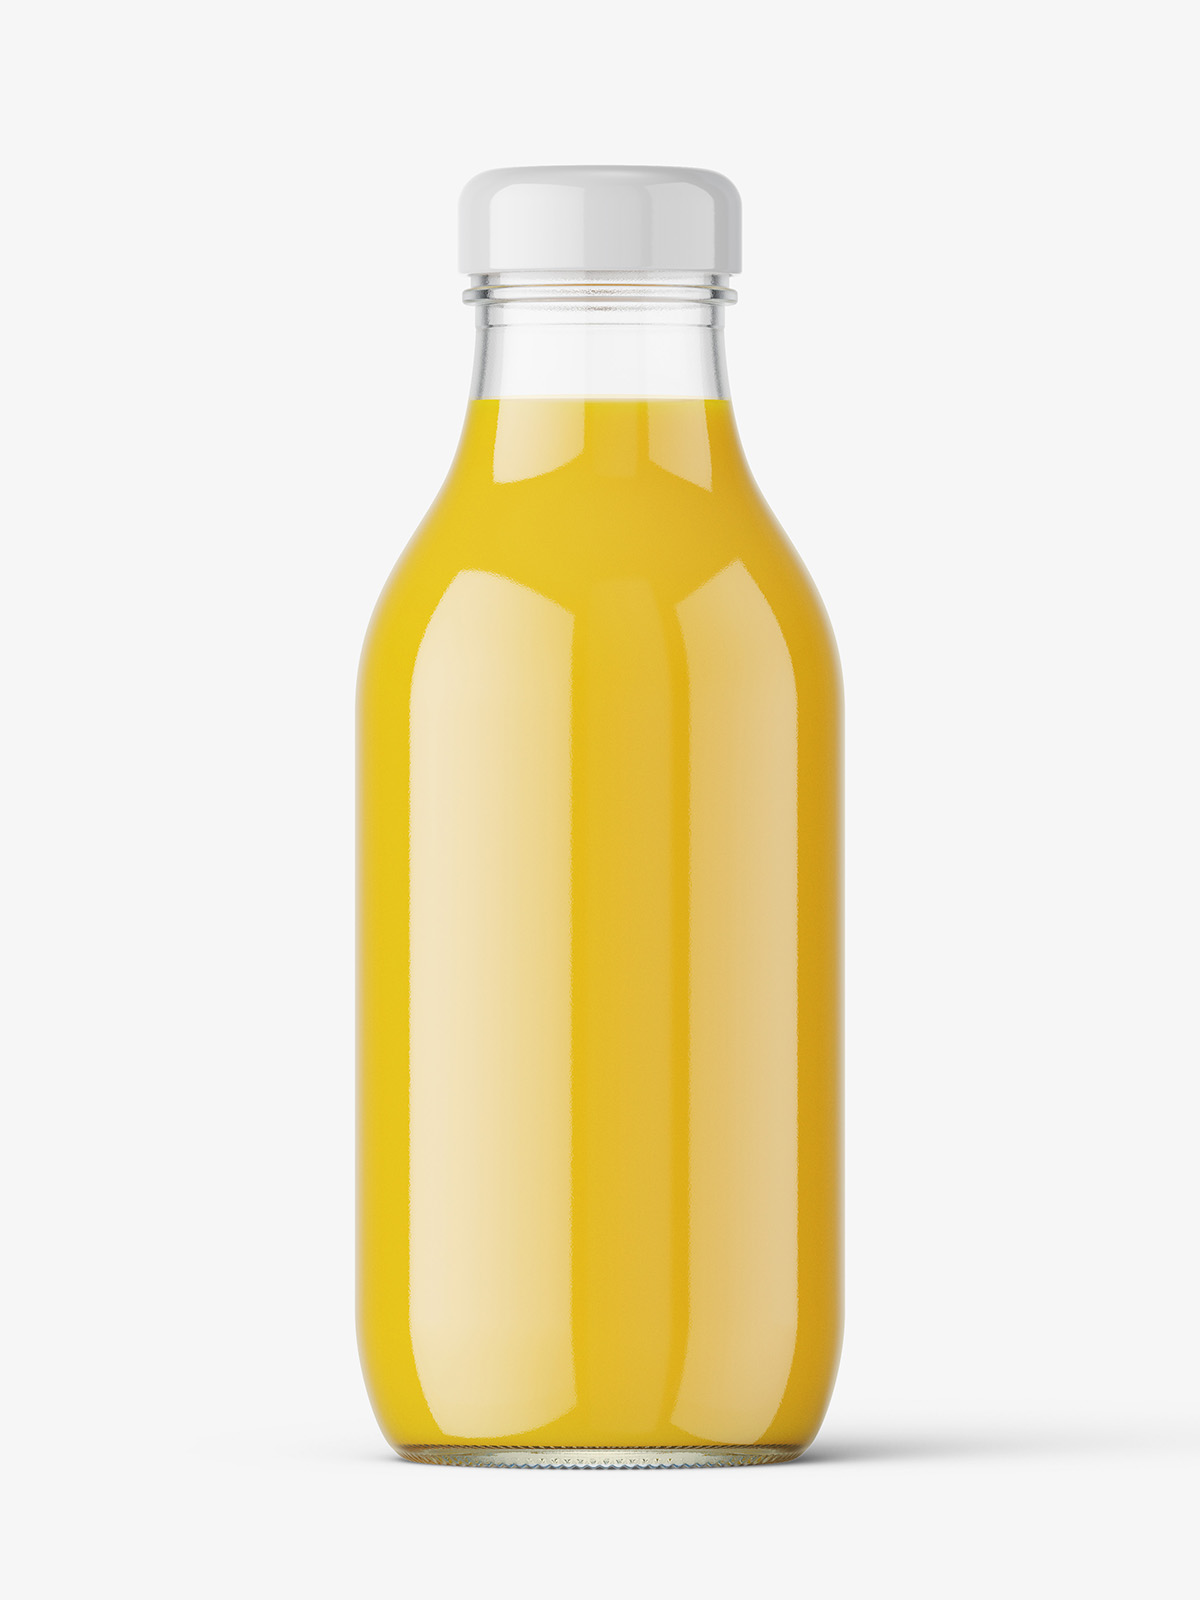 Glass Bottle W/ Orange Juice Mock-up - Free Download Images High